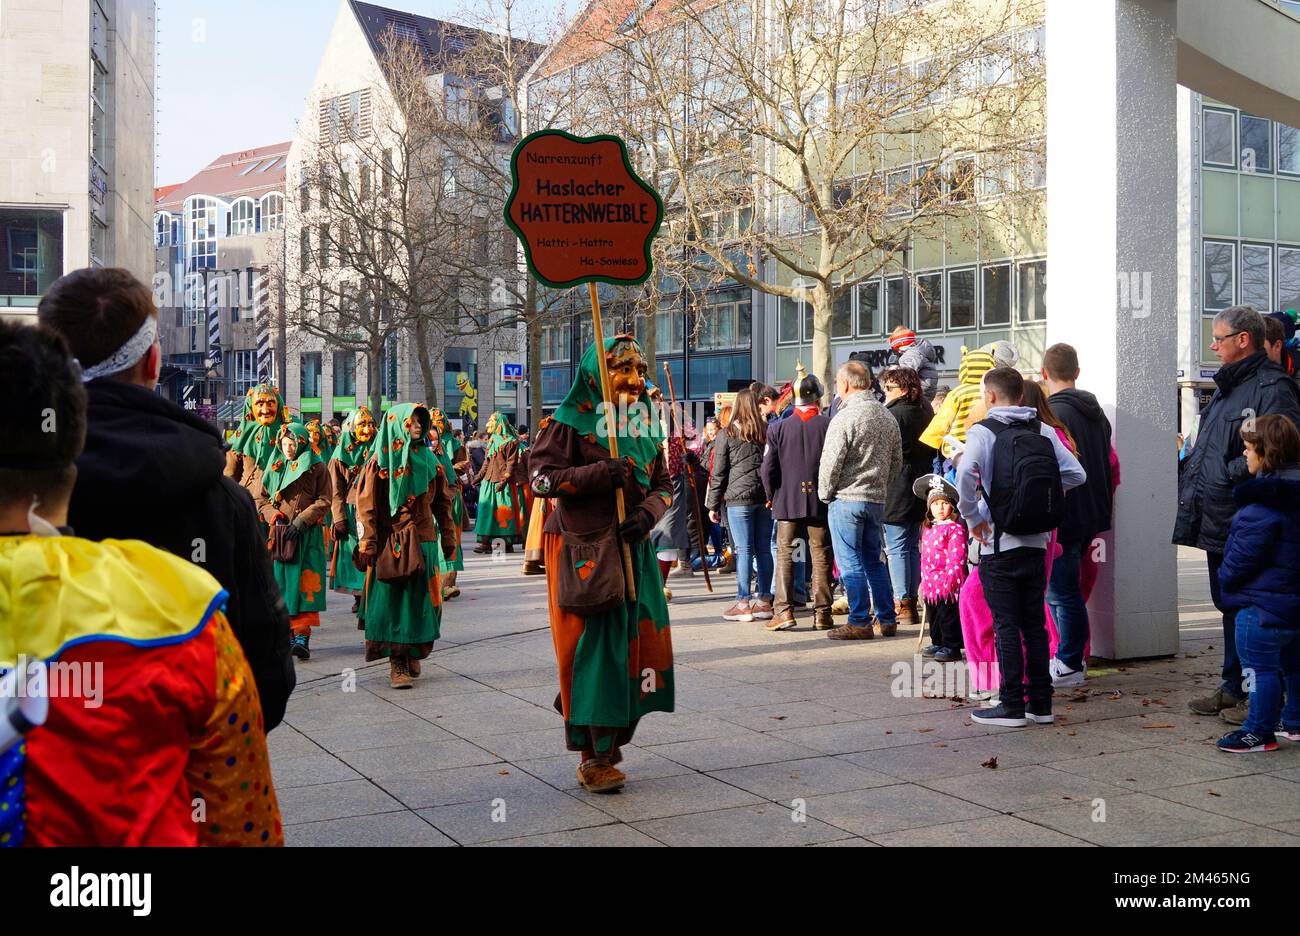 Persone vestite con abiti e maschere divertenti che celebrano il tradizionale carnevale della Shrovetide tedesca chiamato Fasching o Narrensprung (Ulm, Germania) Foto Stock